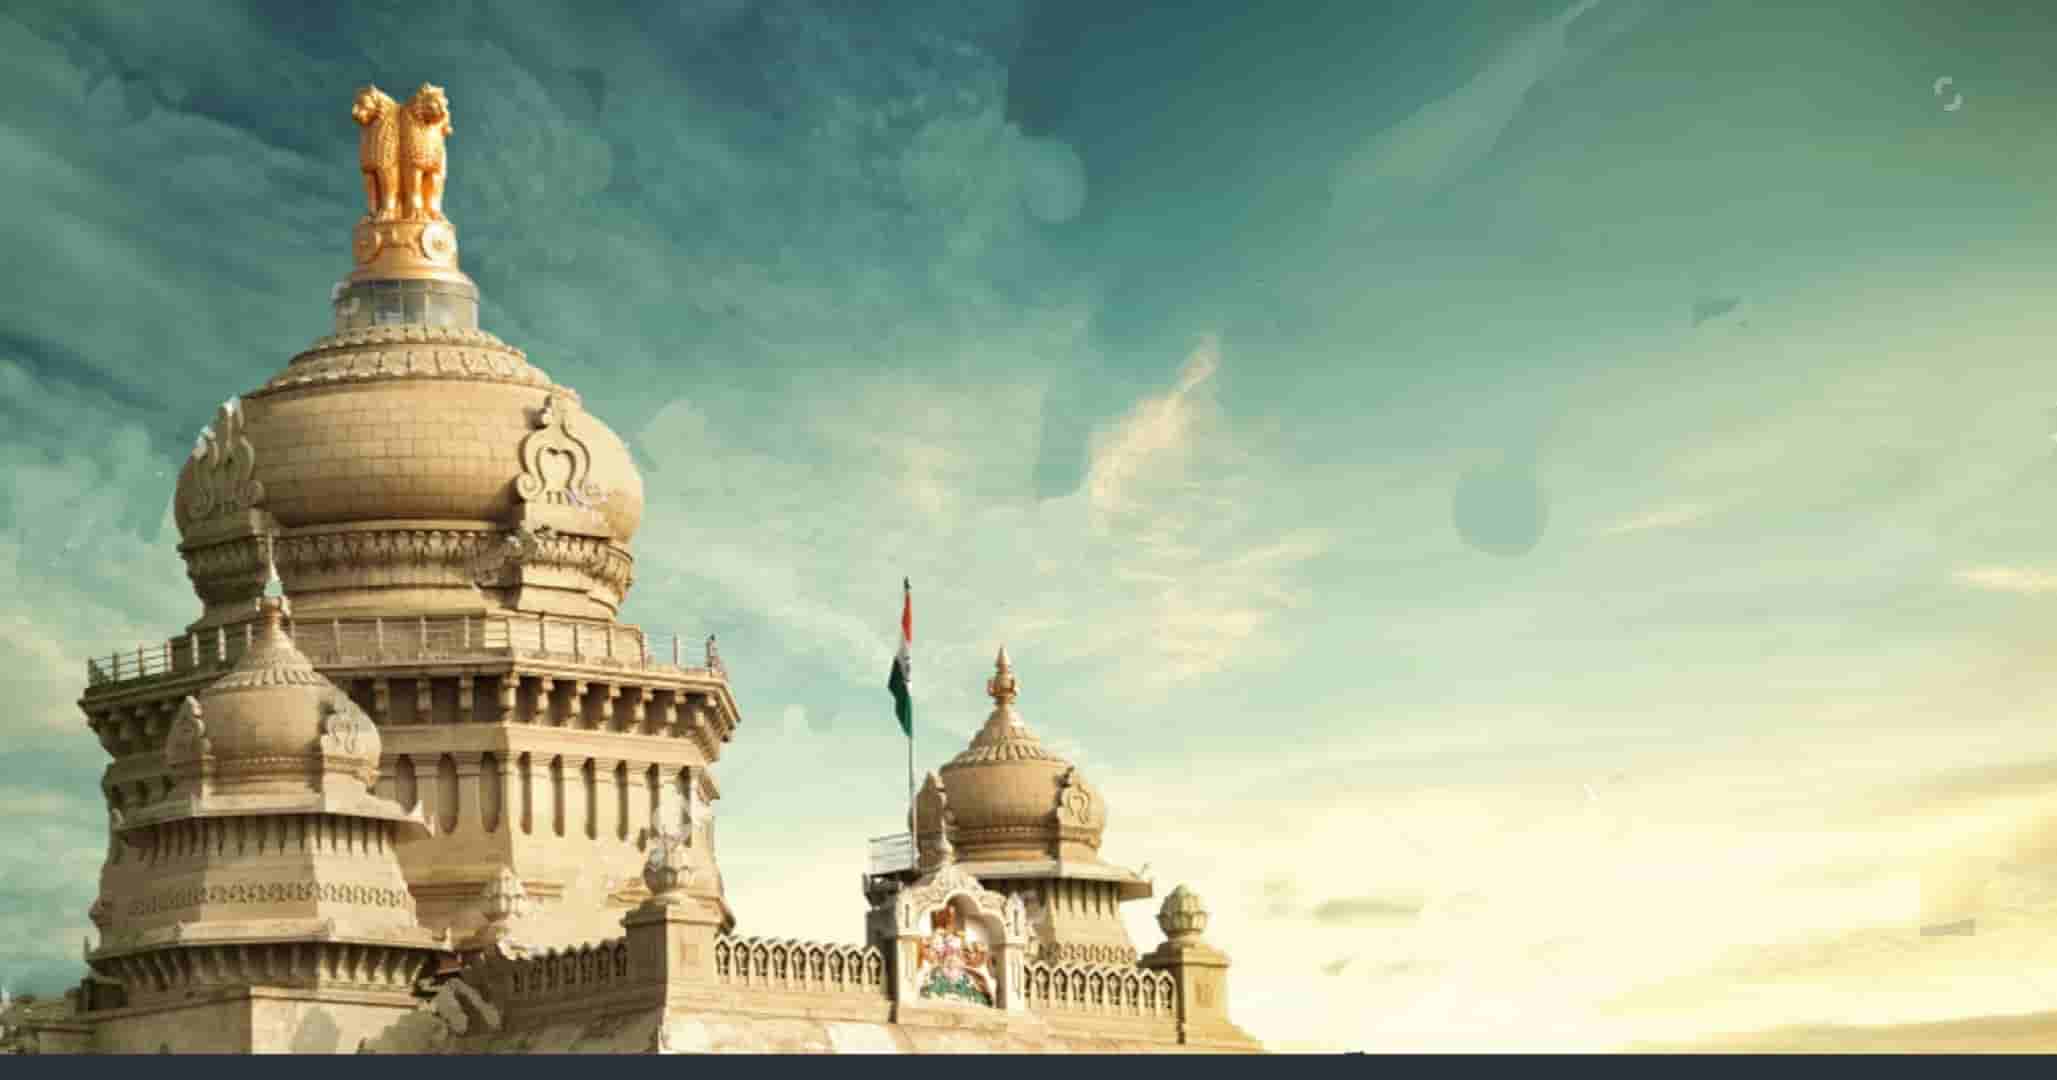 What is the capital of Karnataka